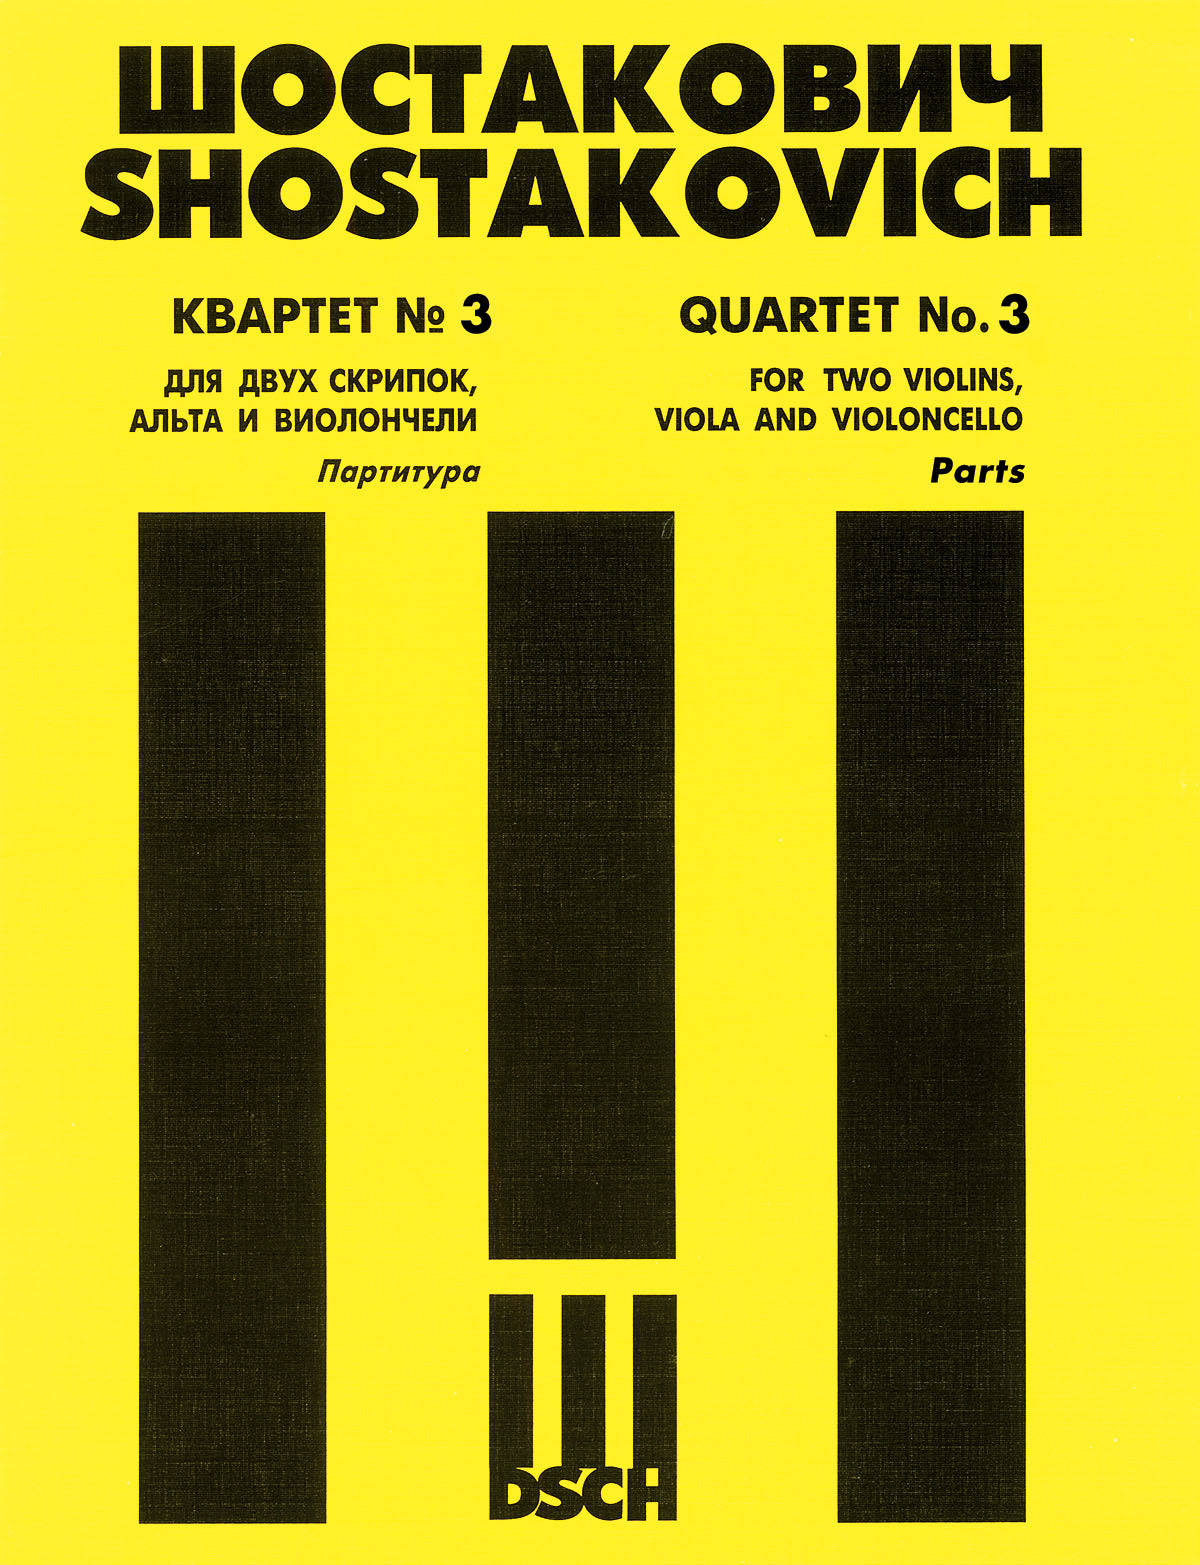 Shostakovich: String Quartet No. 3, Op. 73